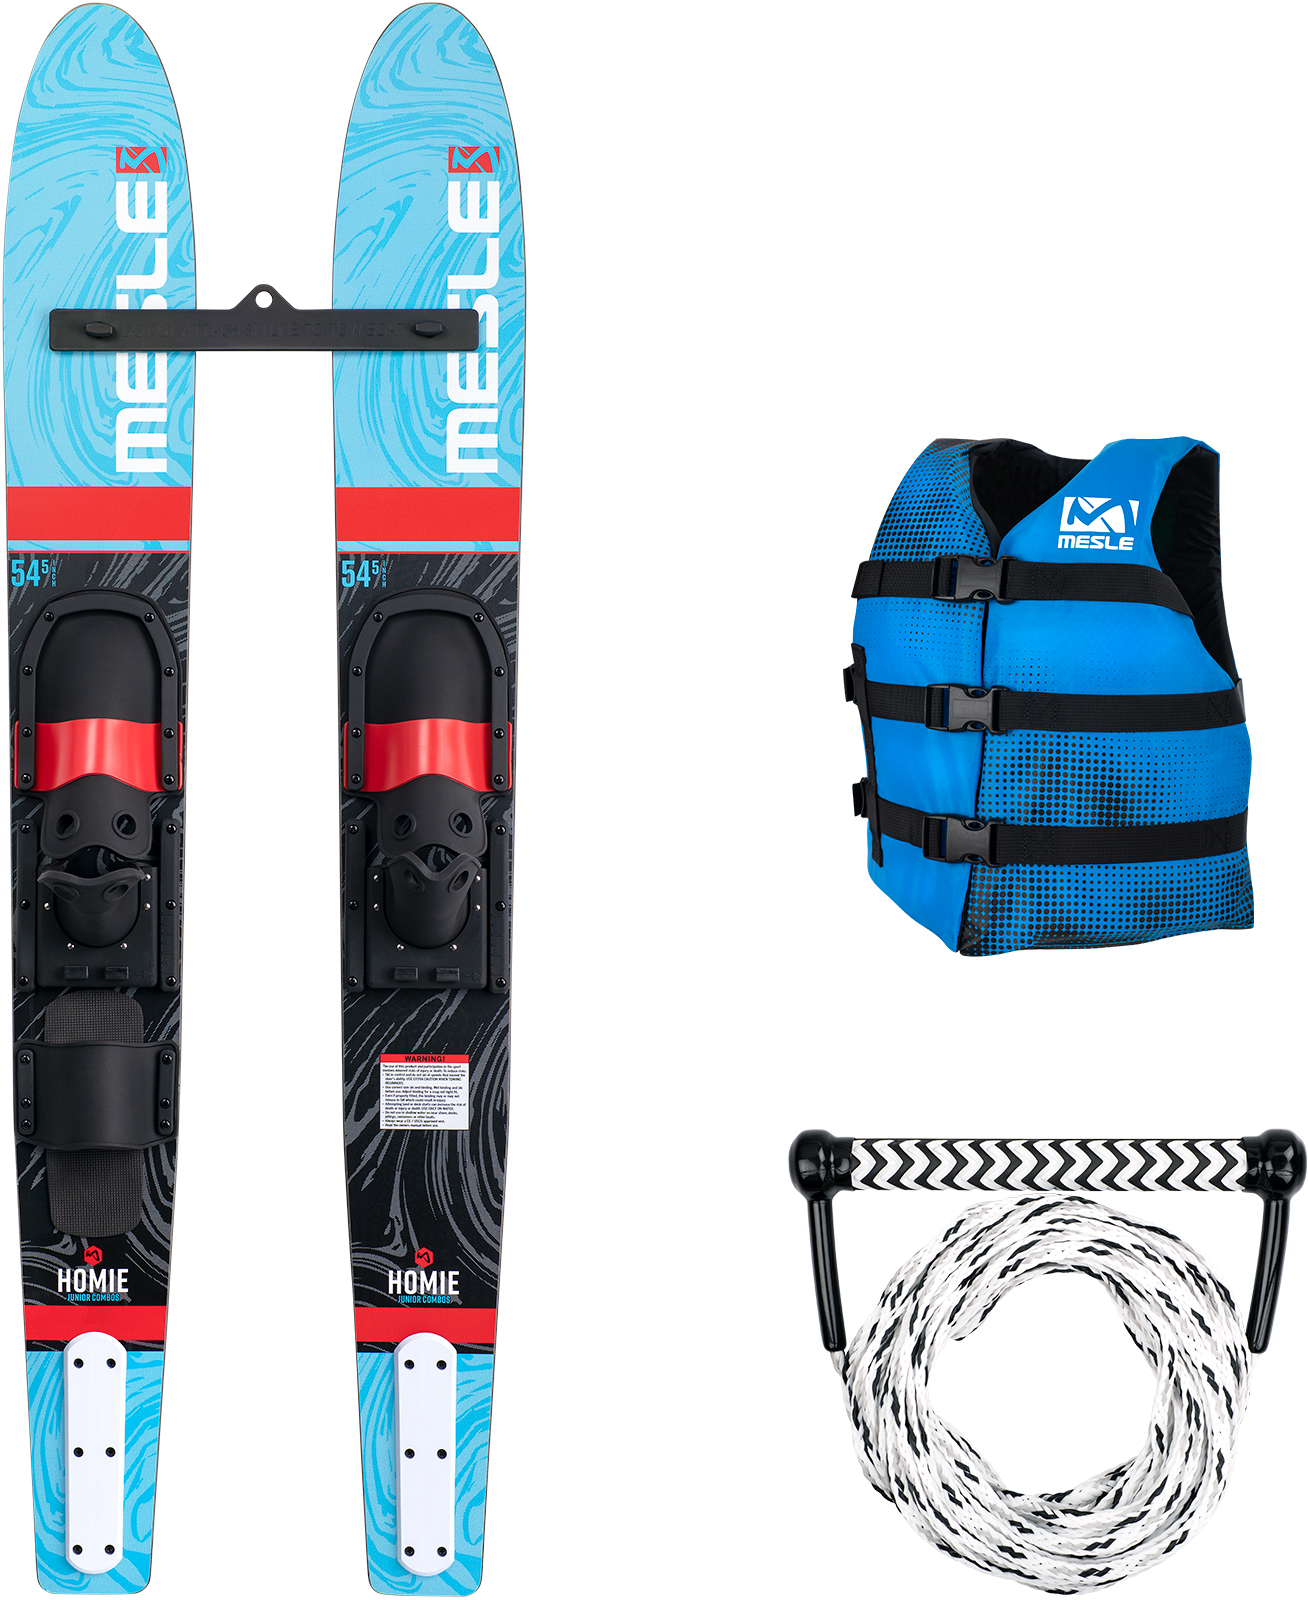 MESLE Wasser-Ski Set Homie 139 cm für Jugendliche mit Schwimmweste & Leine